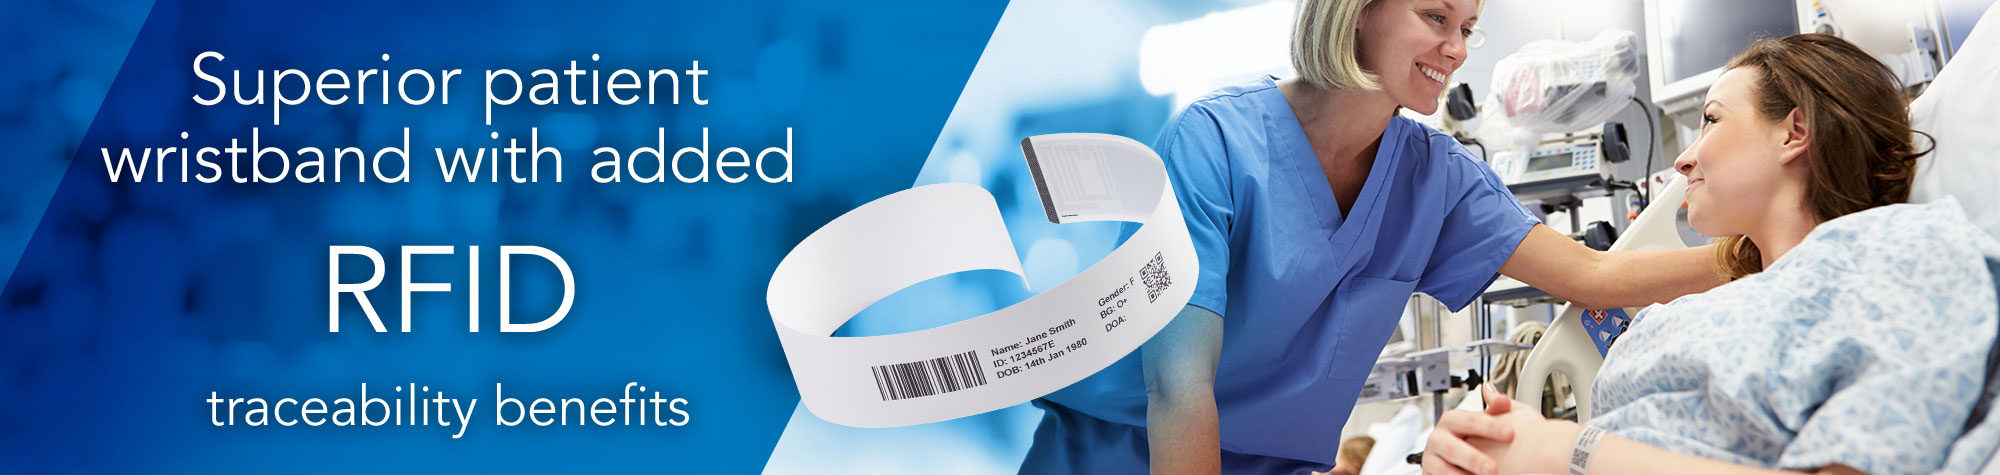 Doskonała opaska dla pacjentów wzbogacona o możliwości identyfikacyjne z technologią RFID